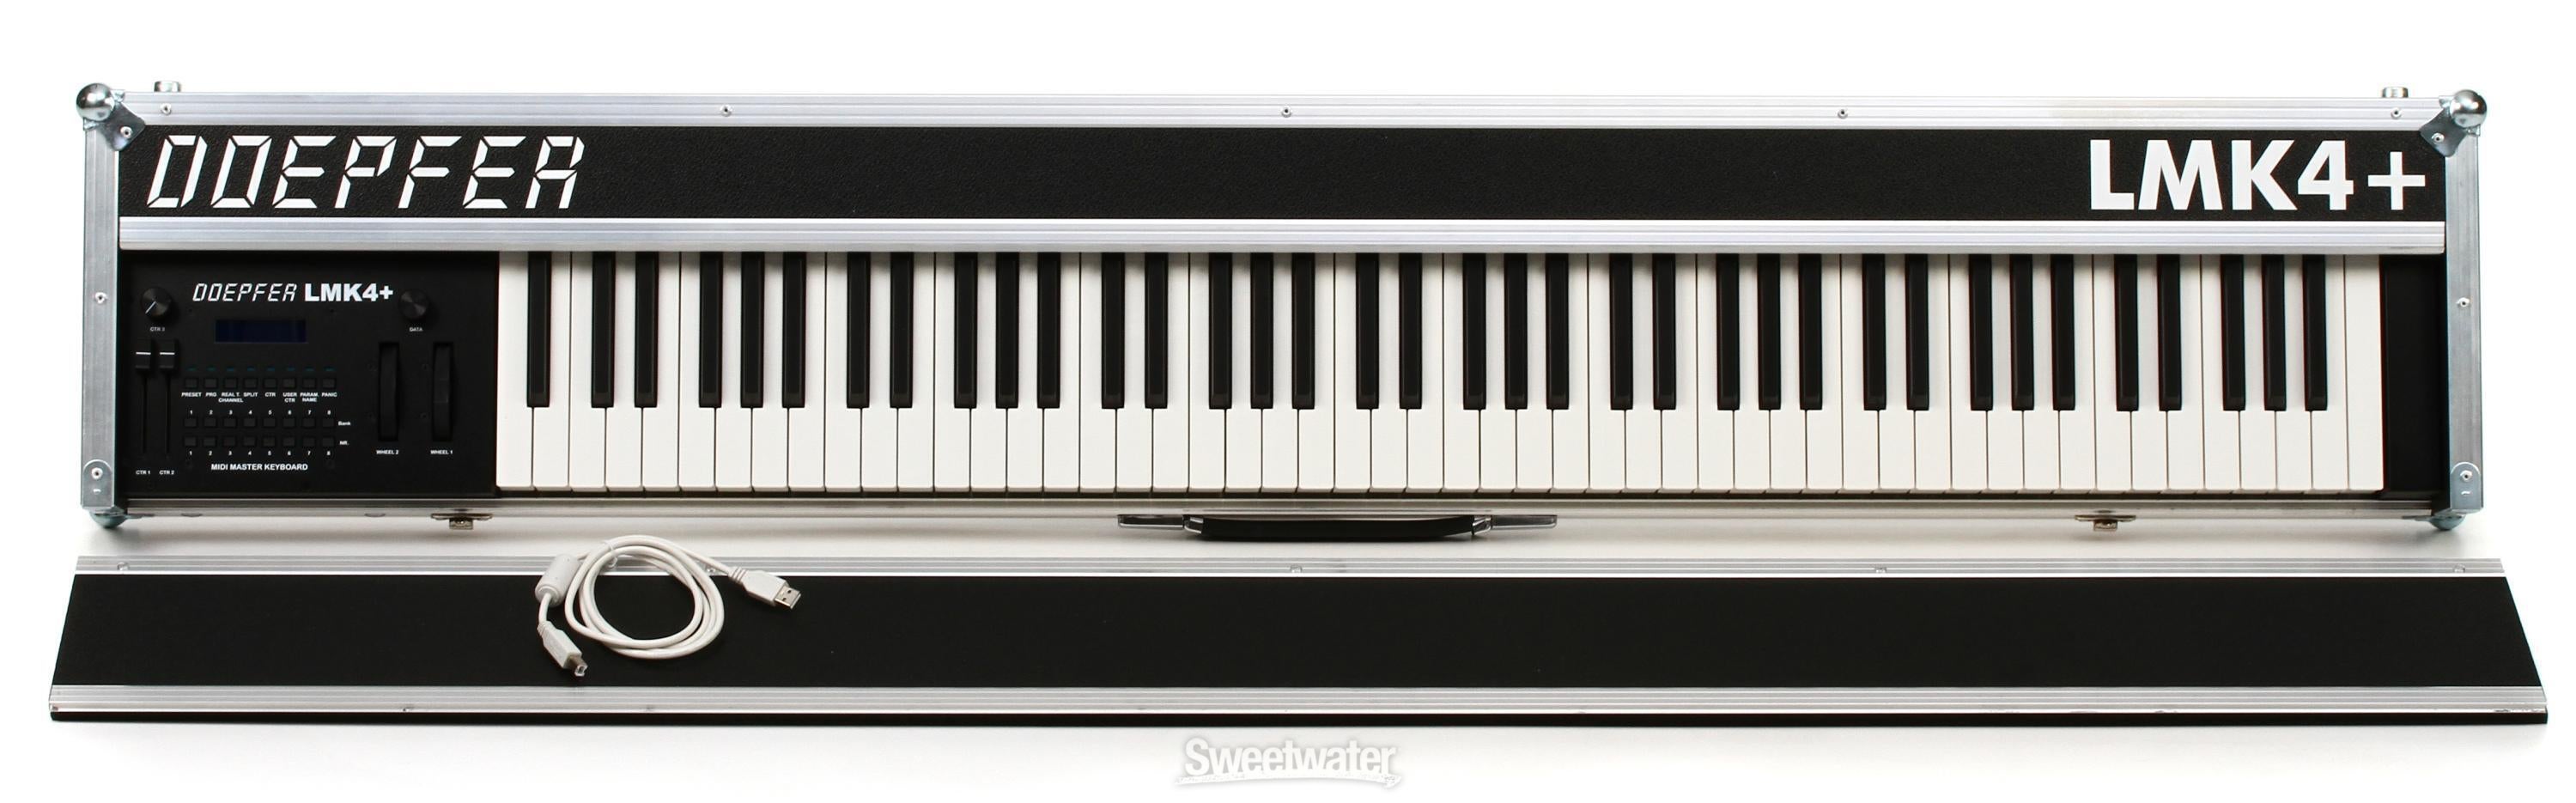 Doepfer LMK4+ 88-key Master Keyboard Controller with Case - Black 